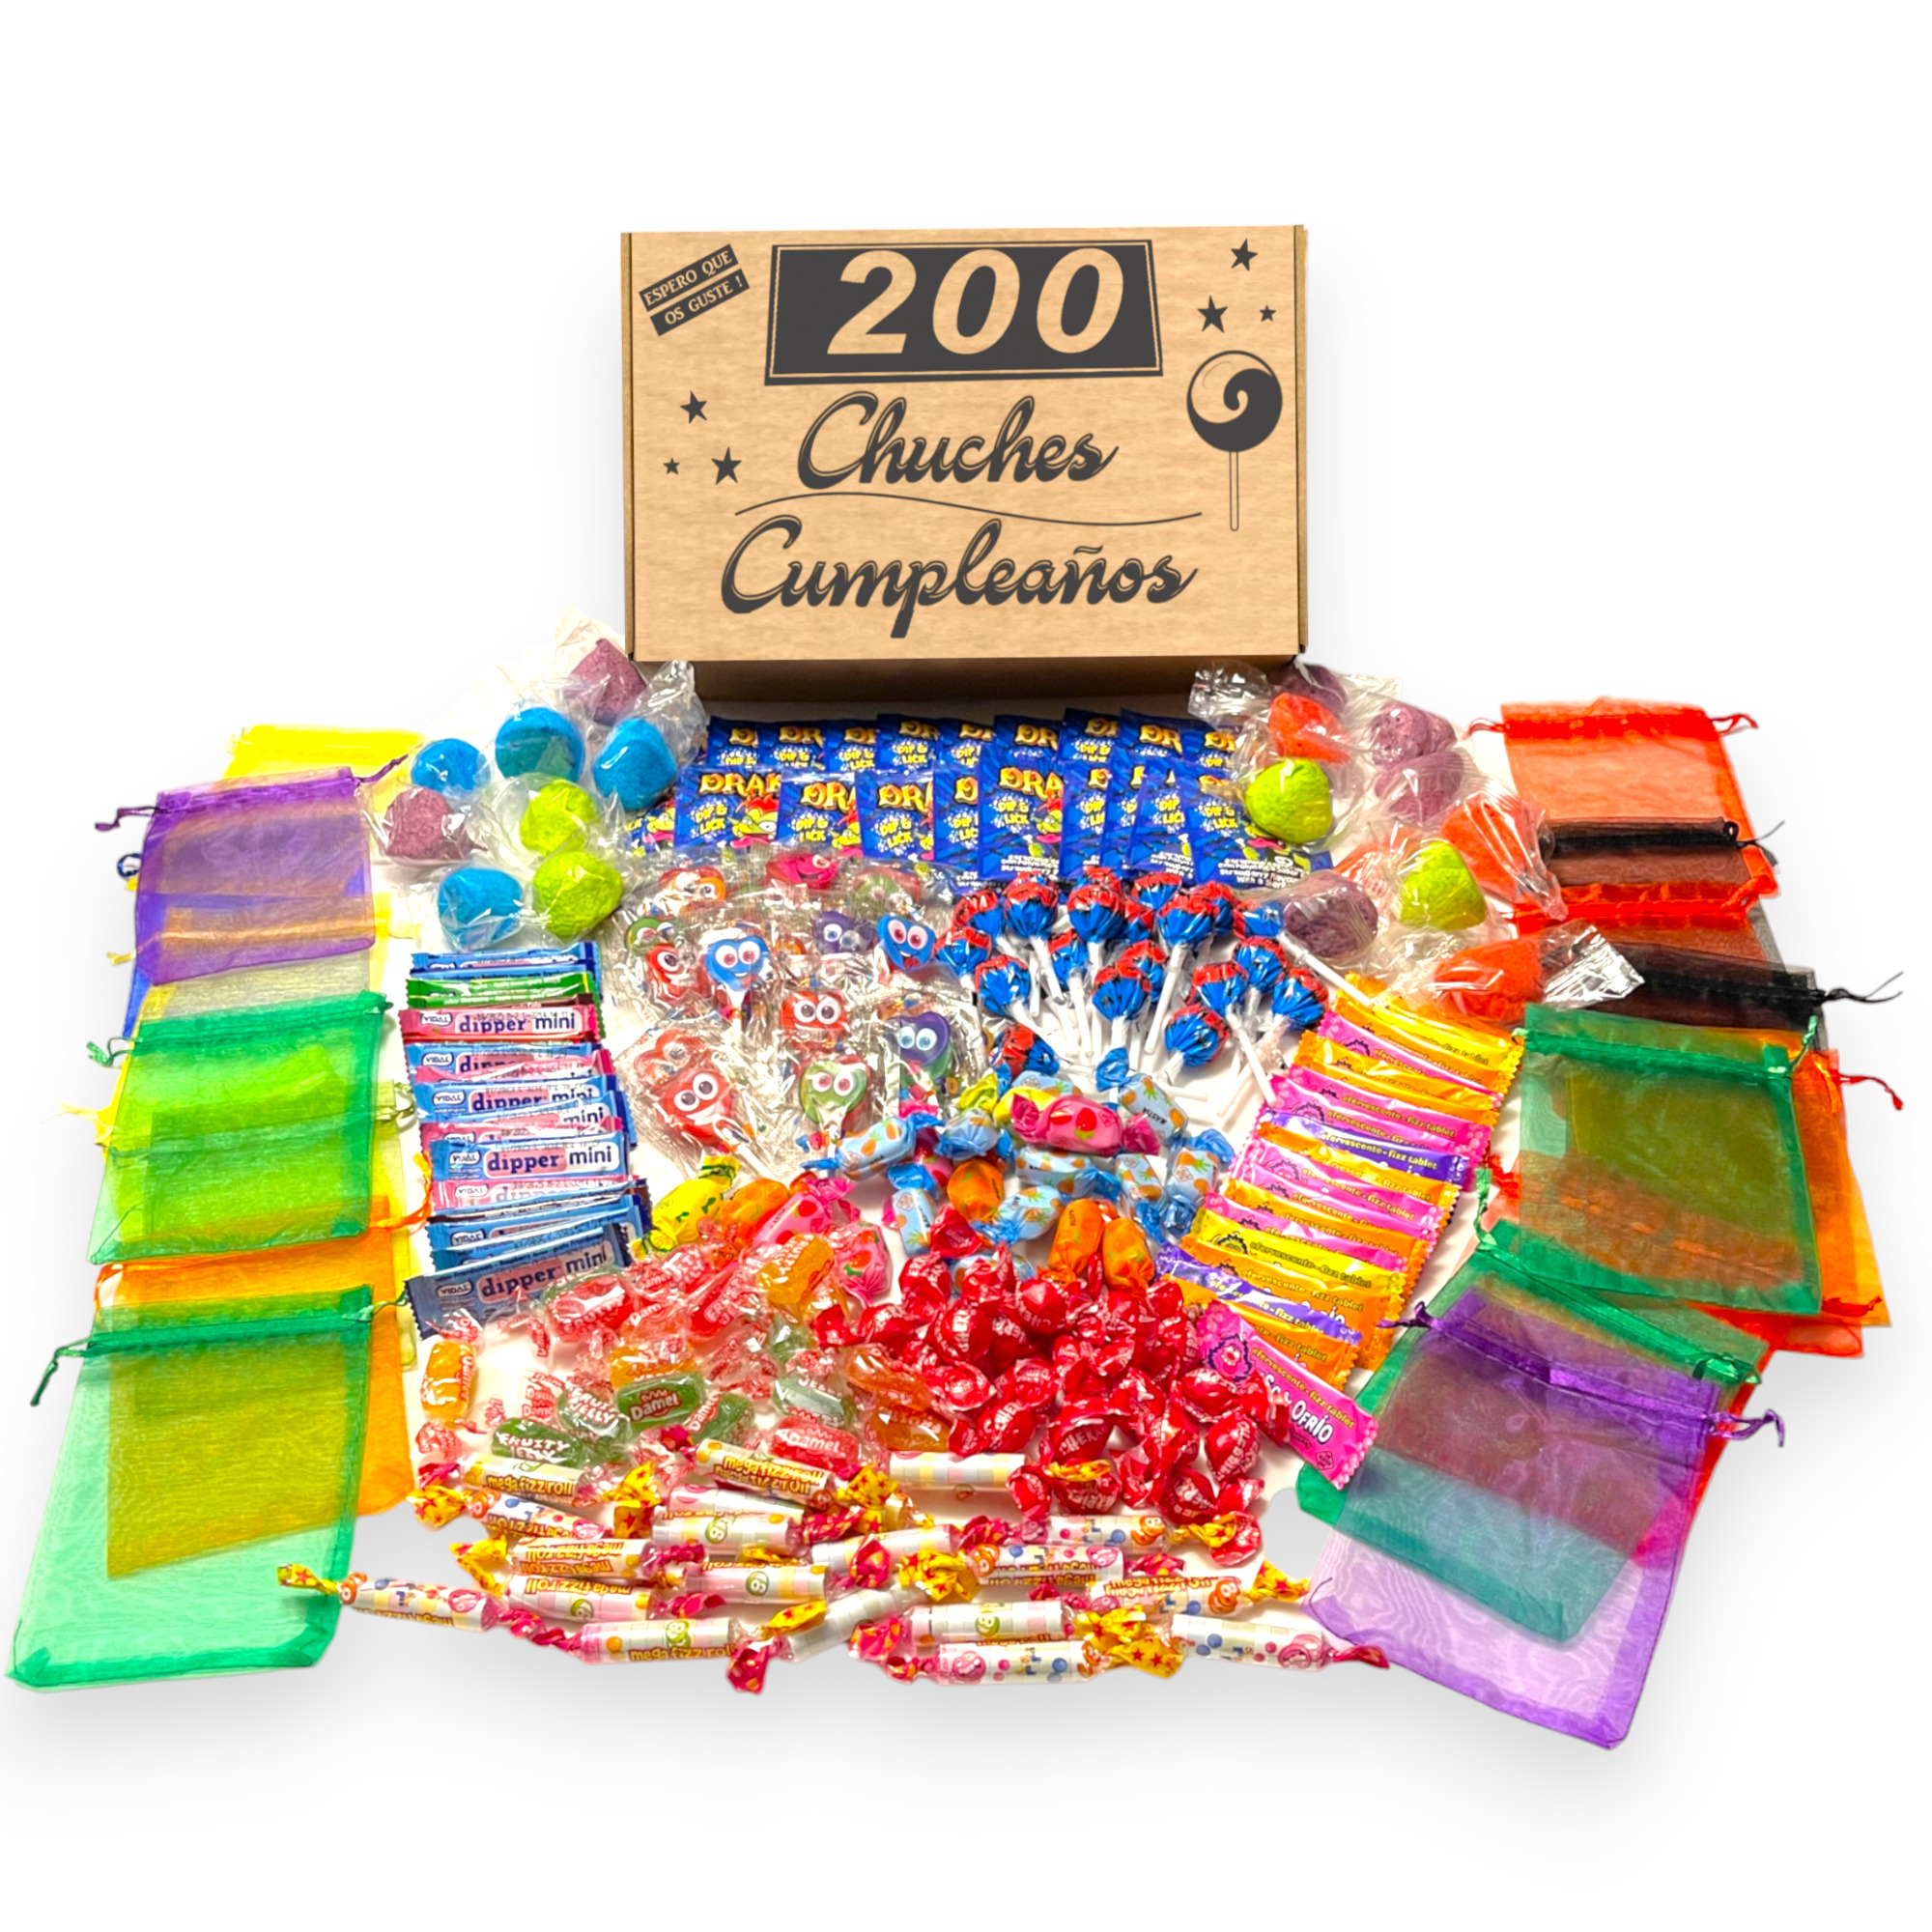 Chuchify: Pack de 10 bolsitas de chuches de cumpleaños preparadas